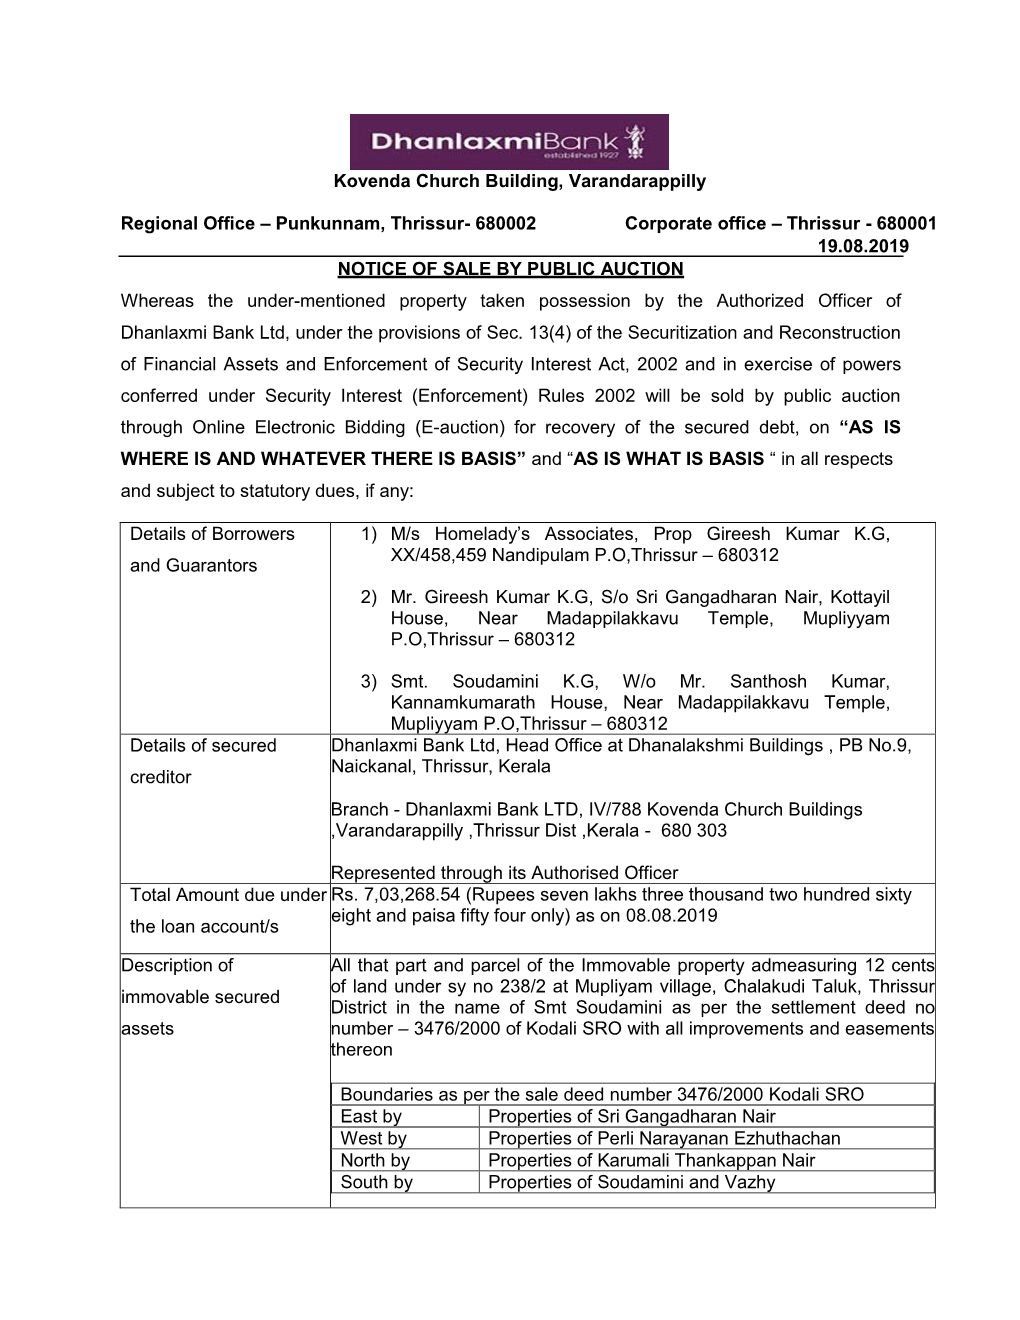 Thrissur- 680002 Corporate Office – Thrissur - 680001 19.08.2019